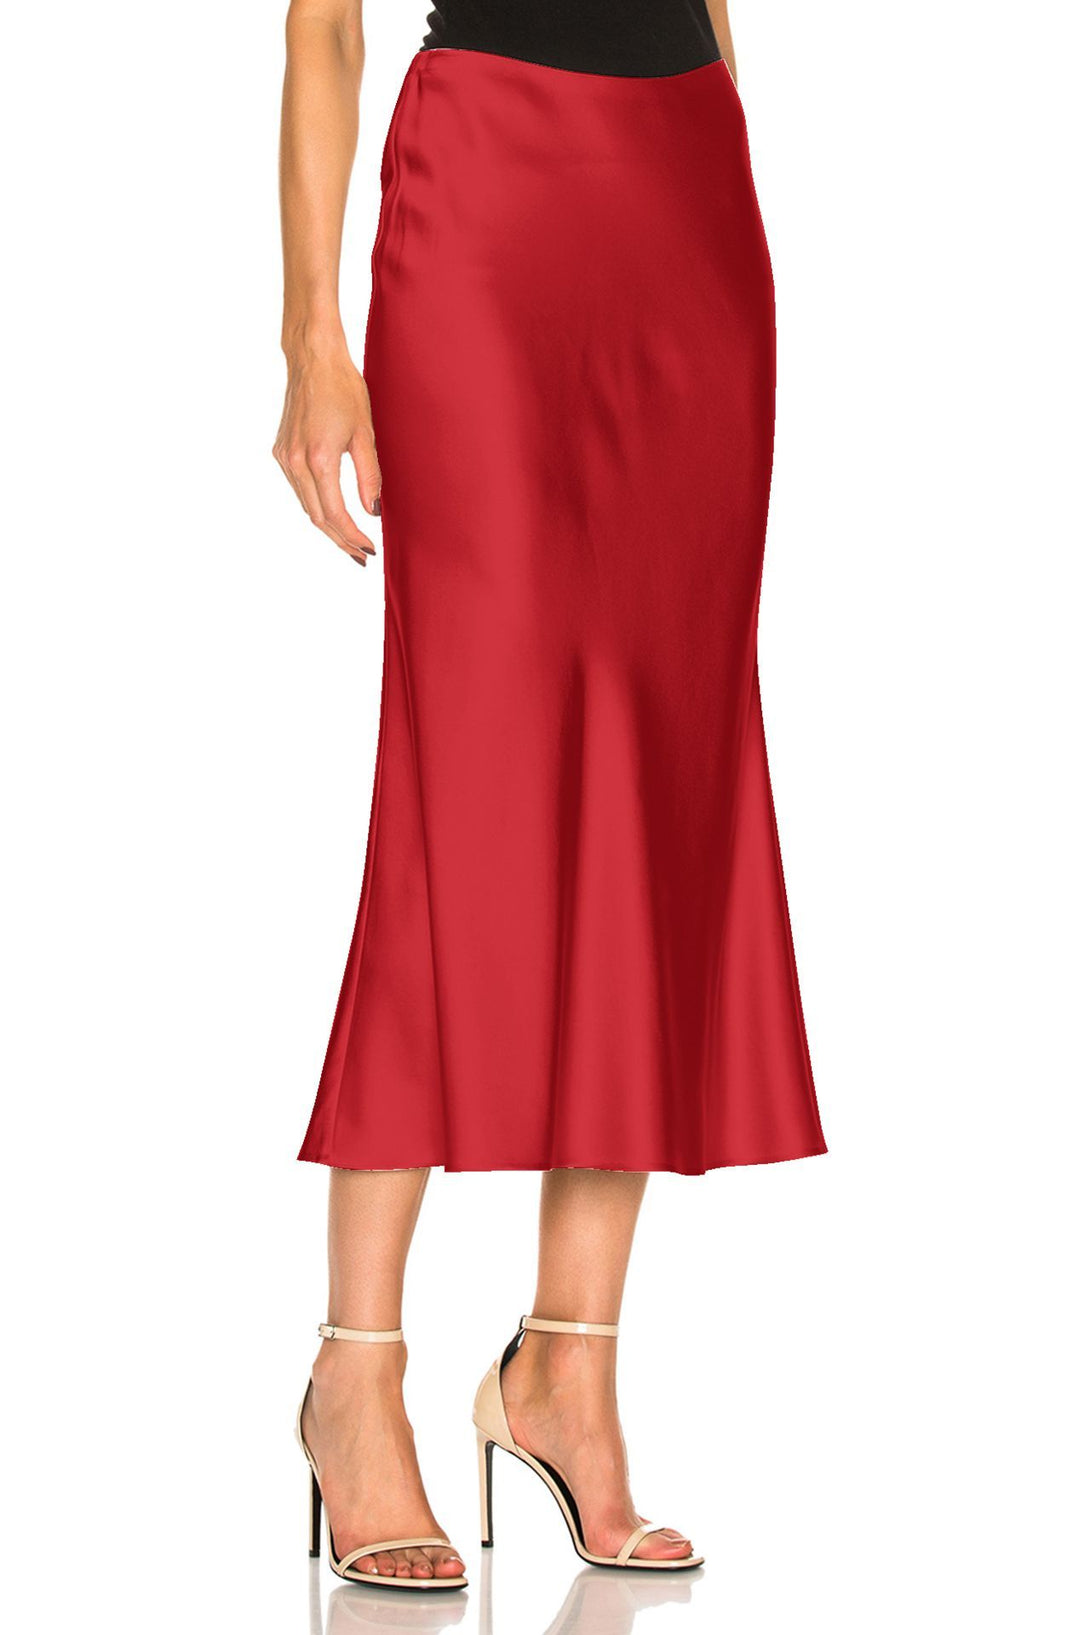 Designer-Red-Skirt-By-Kyle-Richard